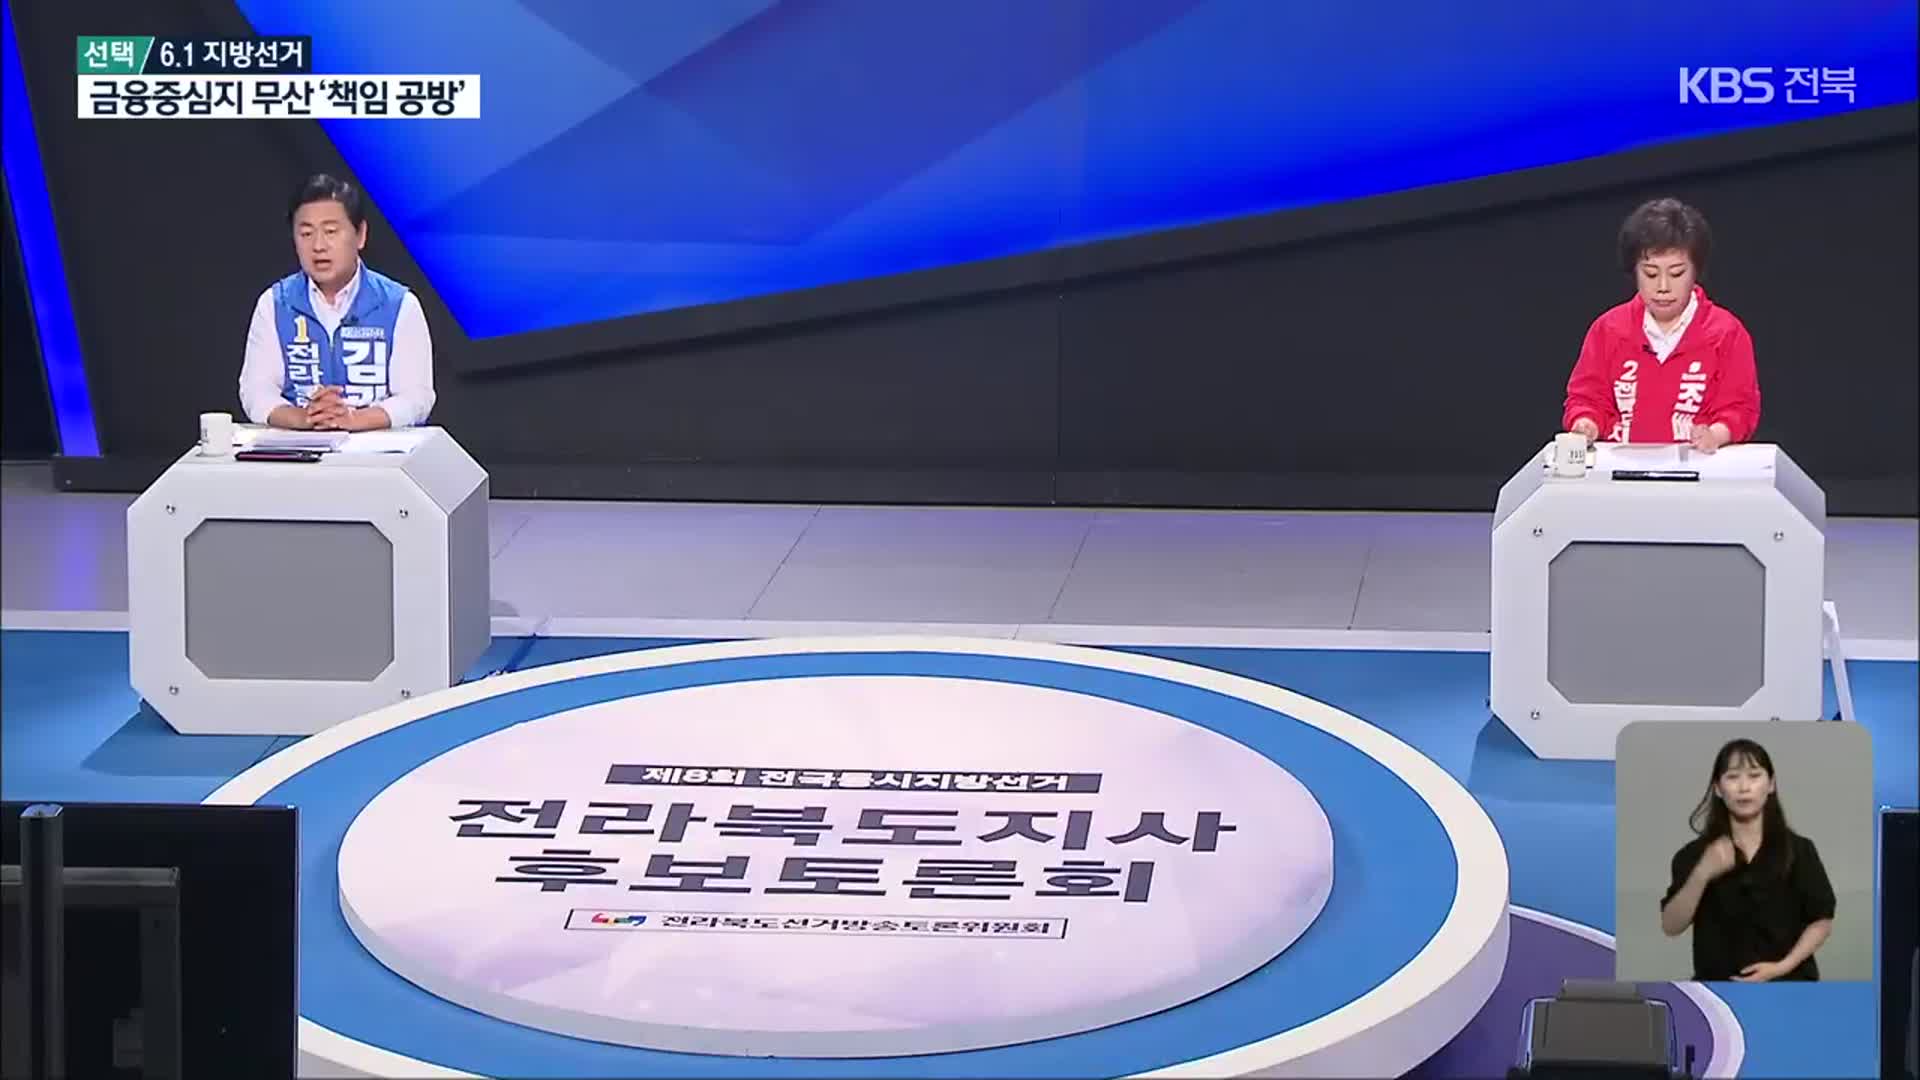 [전북] 전북도지사 후보 토론…전북 금융중심지 ‘책임 공방’